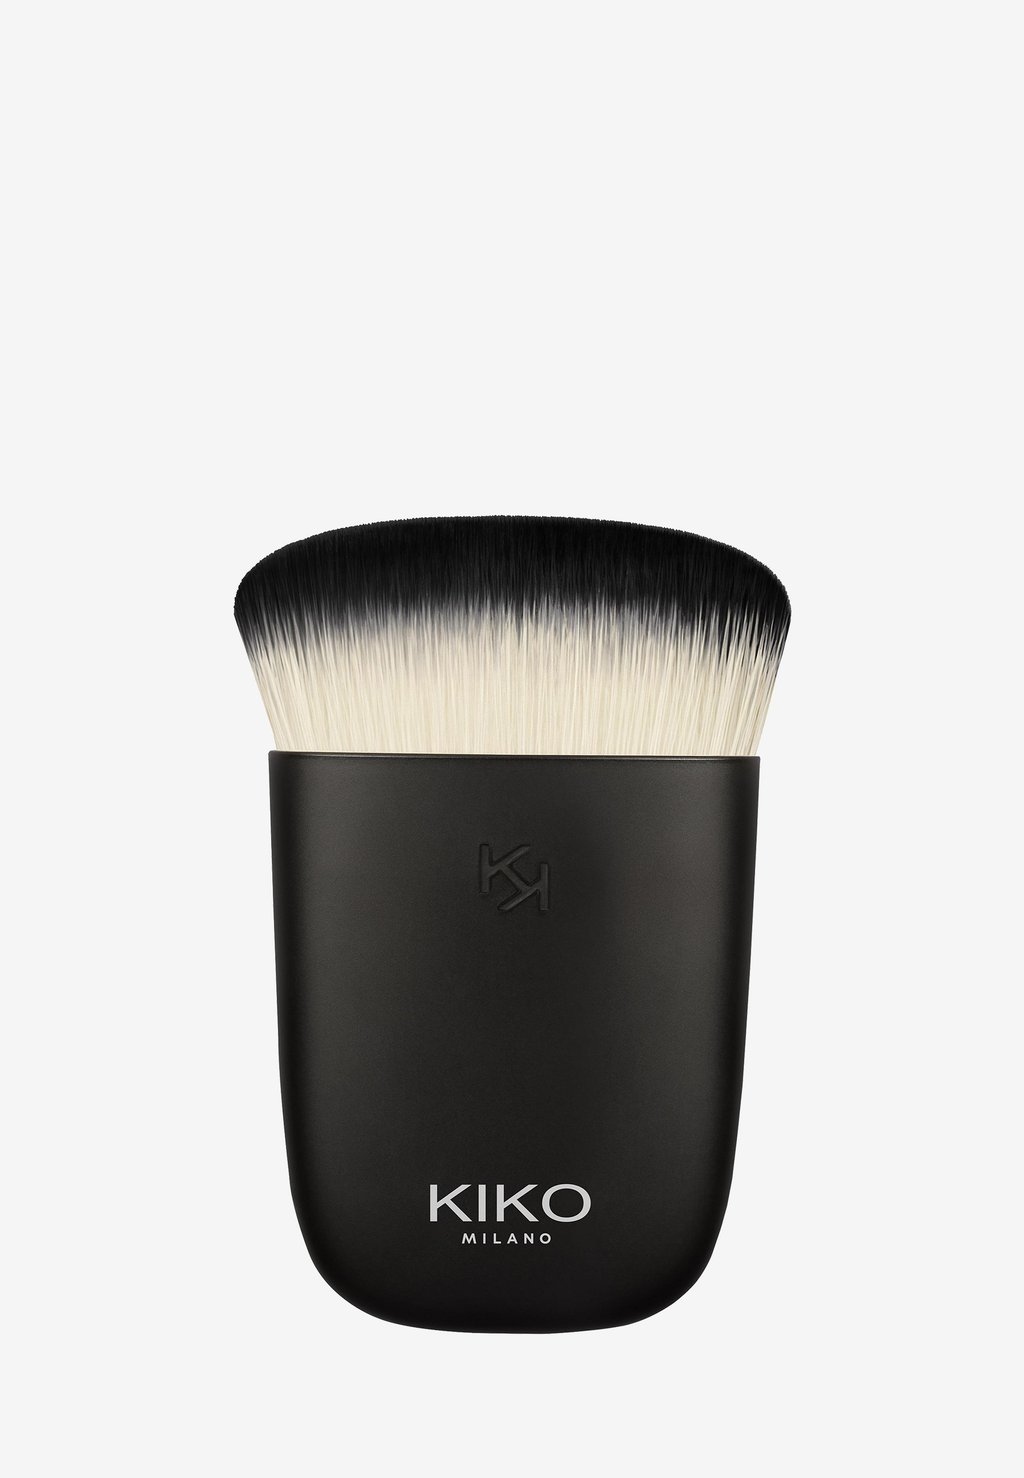 многофункциональная кисть кабуки kiko milano face 16 multi purpose 1 шт Кисти для макияжа Face 16 Multi-Purpose Kabuki Brush KIKO Milano